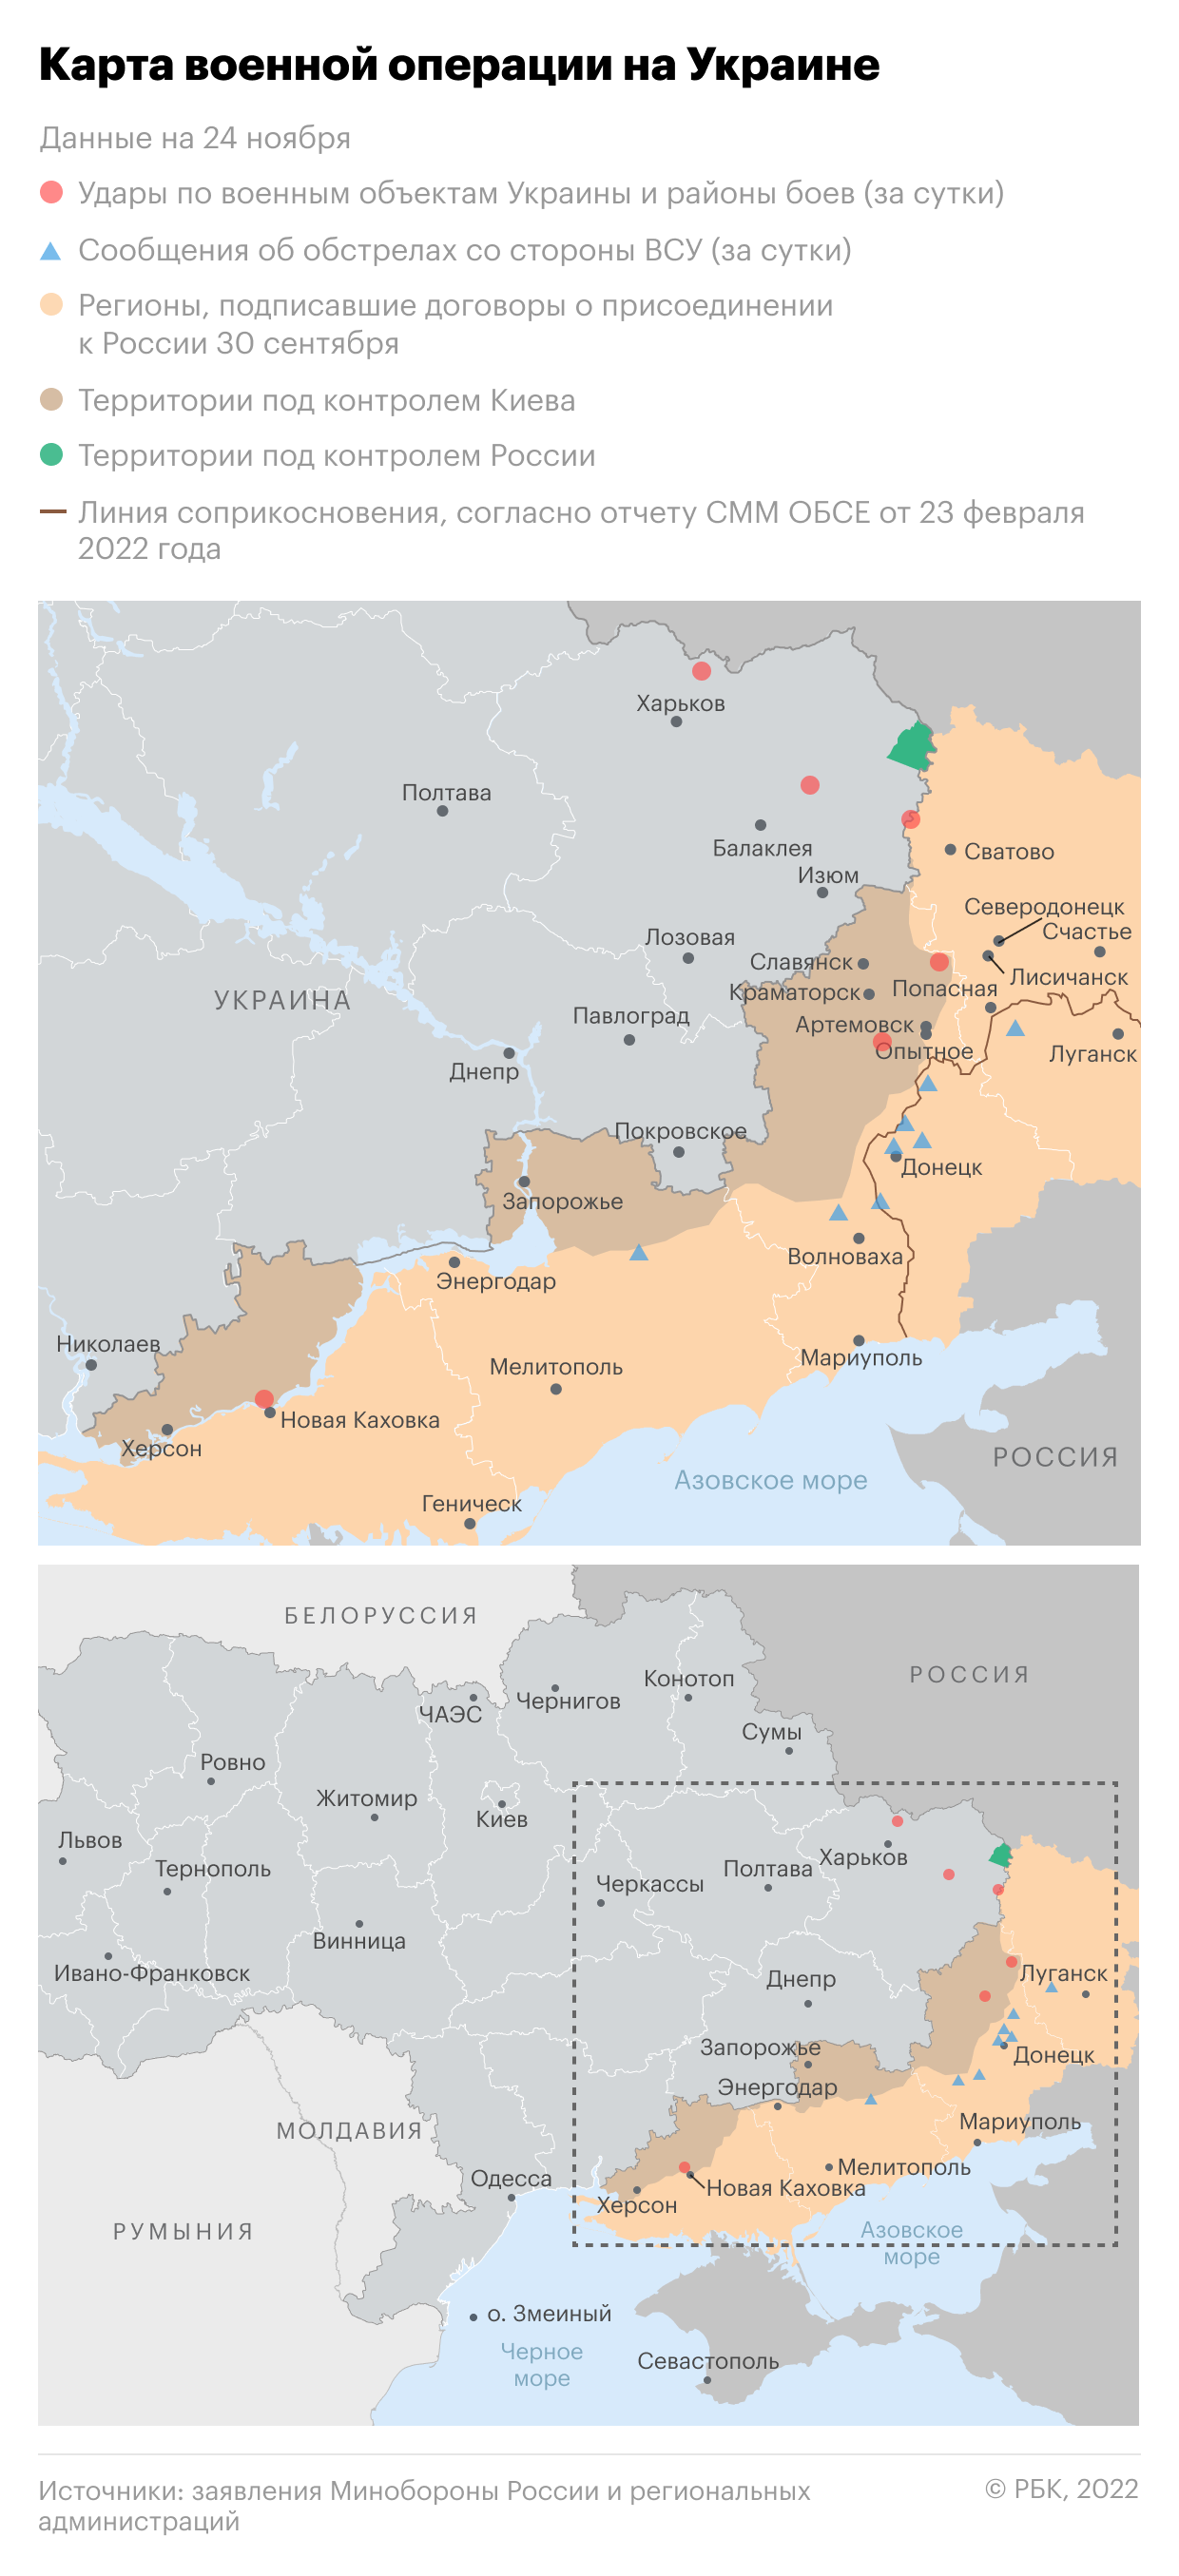 Еврокомиссия призвала срочно передать Украине генераторы и трансформаторы"/>













